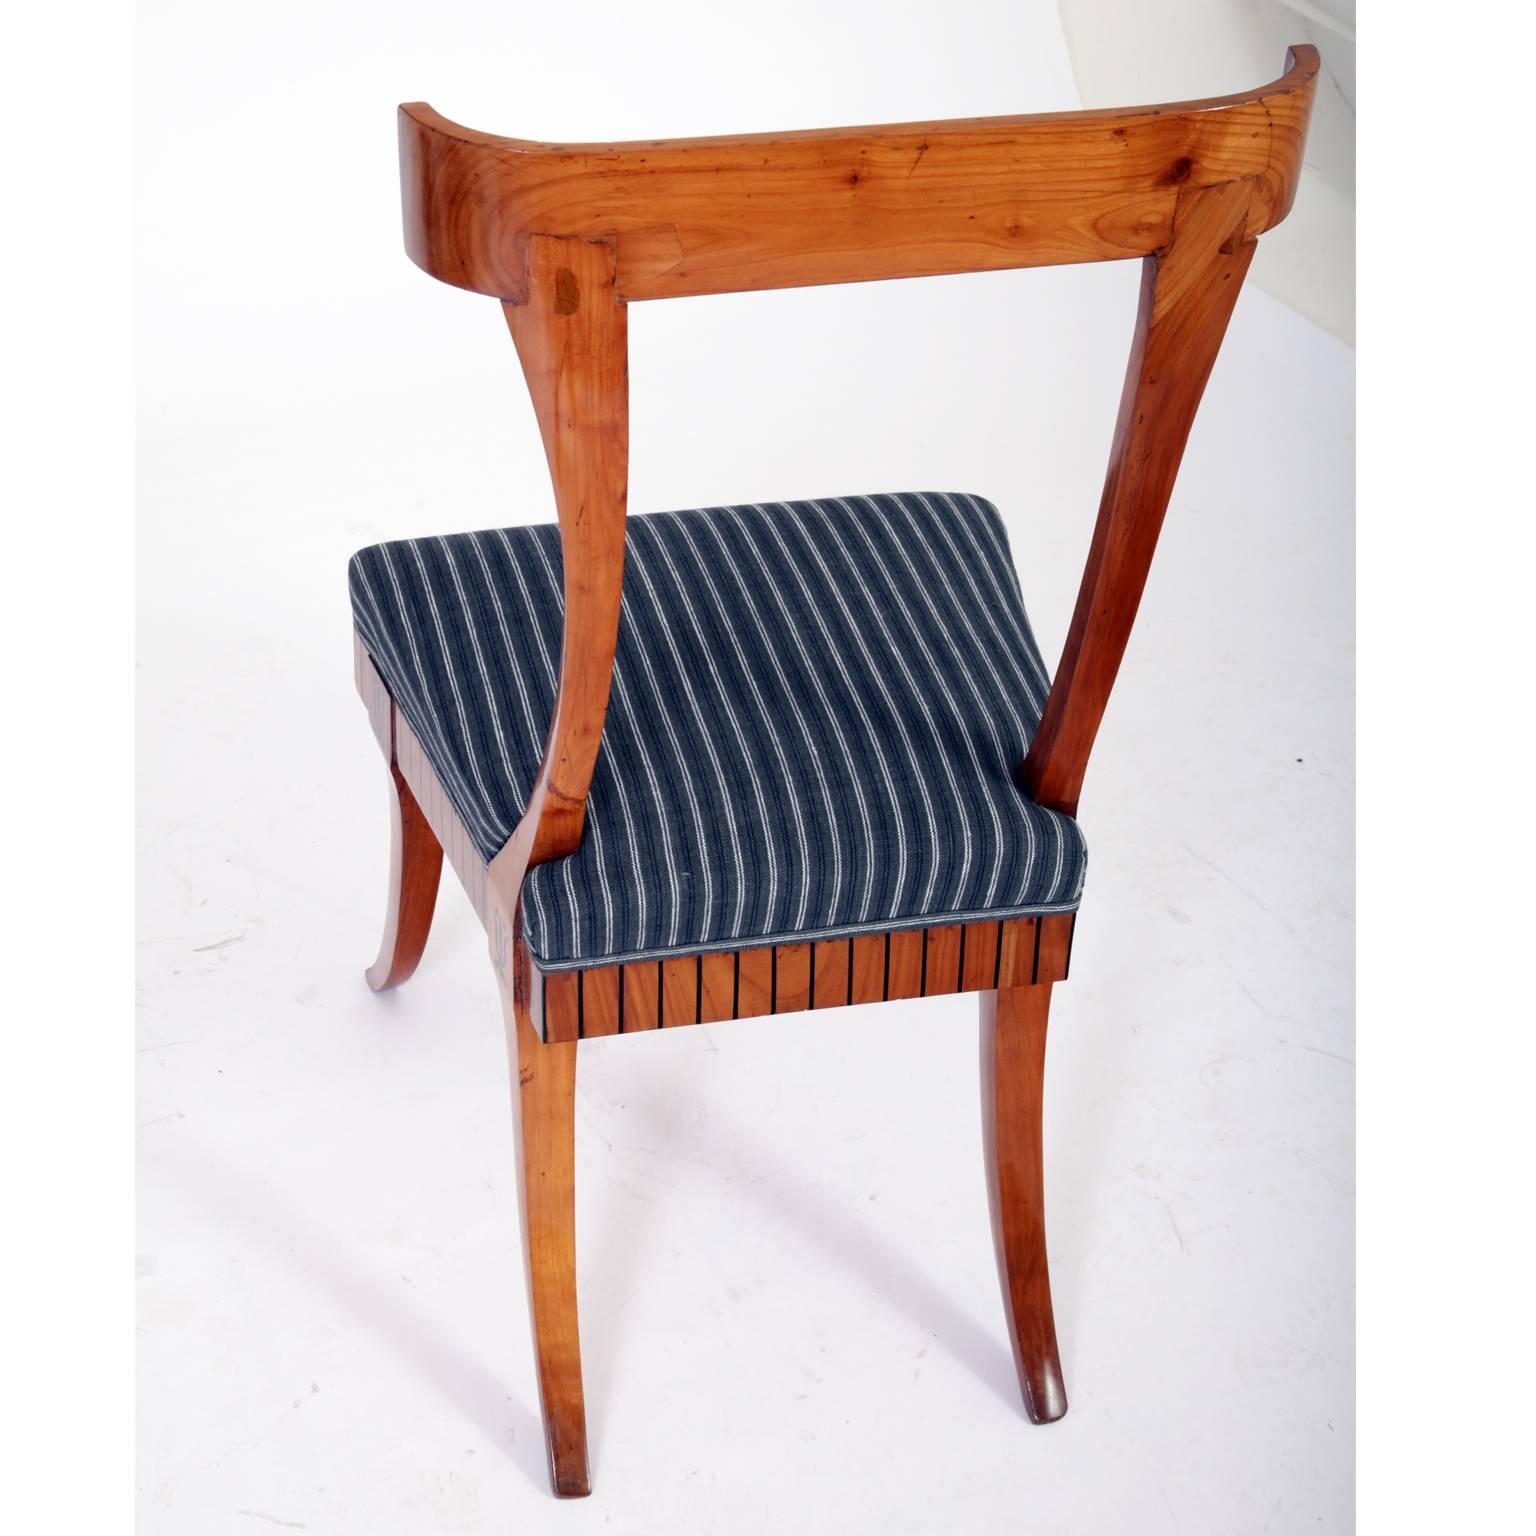 Cherry North European Klismos Chairs, 19th Century